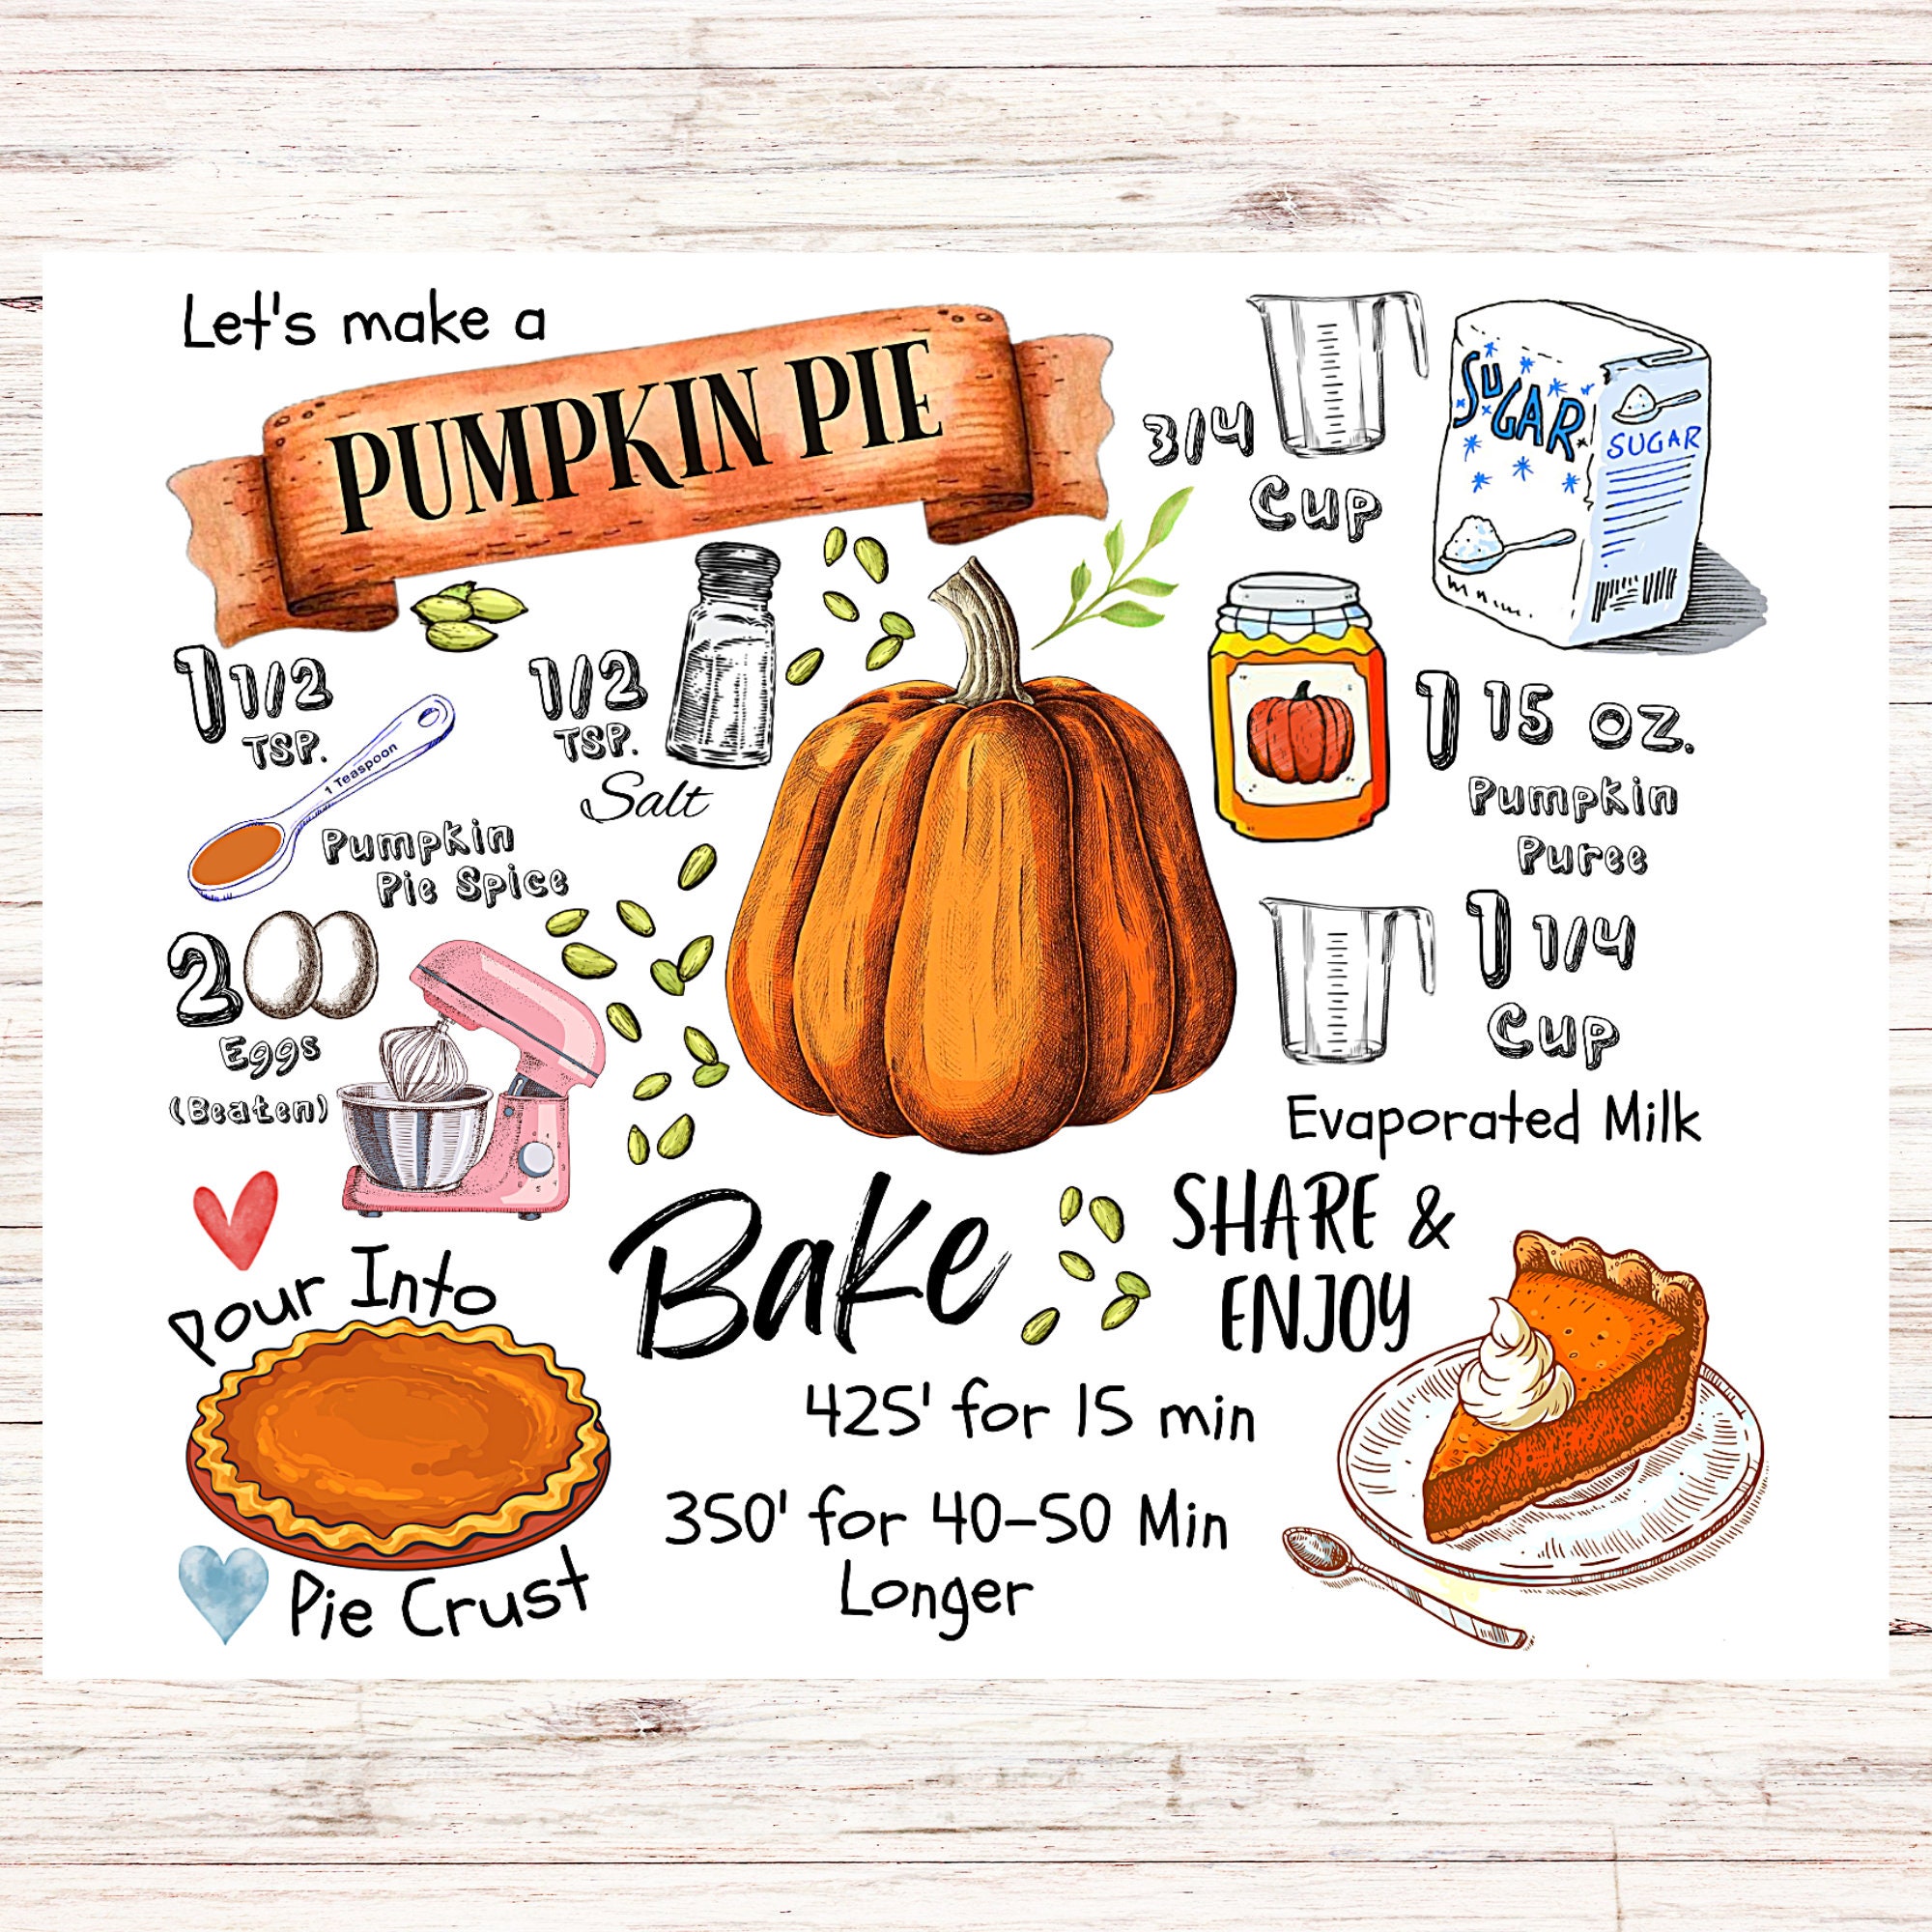 pumpkin pie recipe card